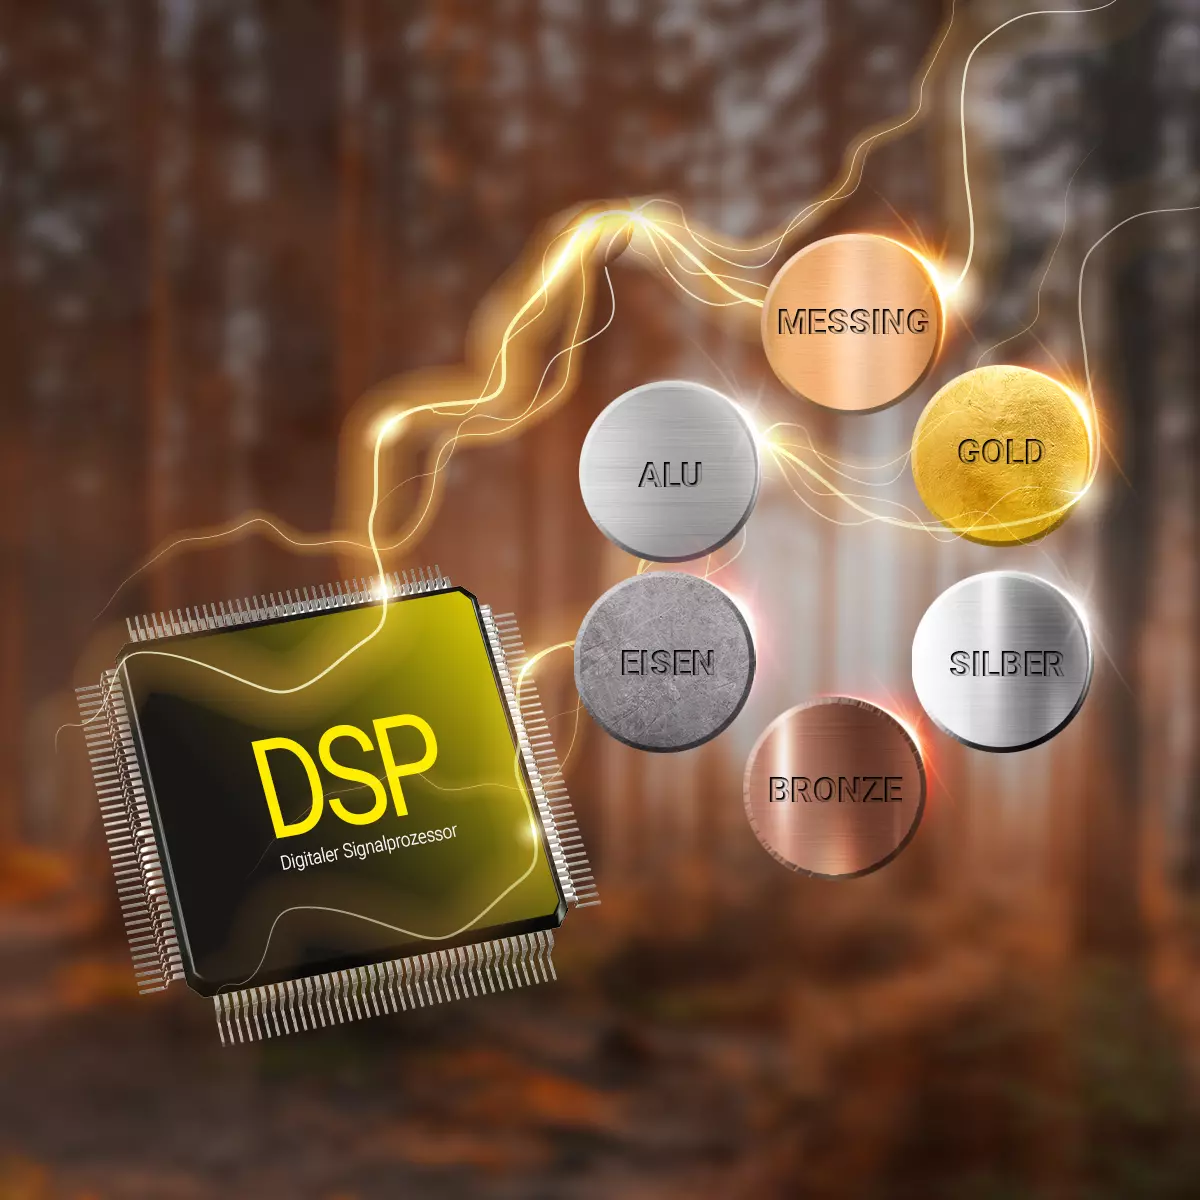 Dank integriertem DSP-Chip erkennt der Metalldetektor Metalle wie Gold, Silber und mehr